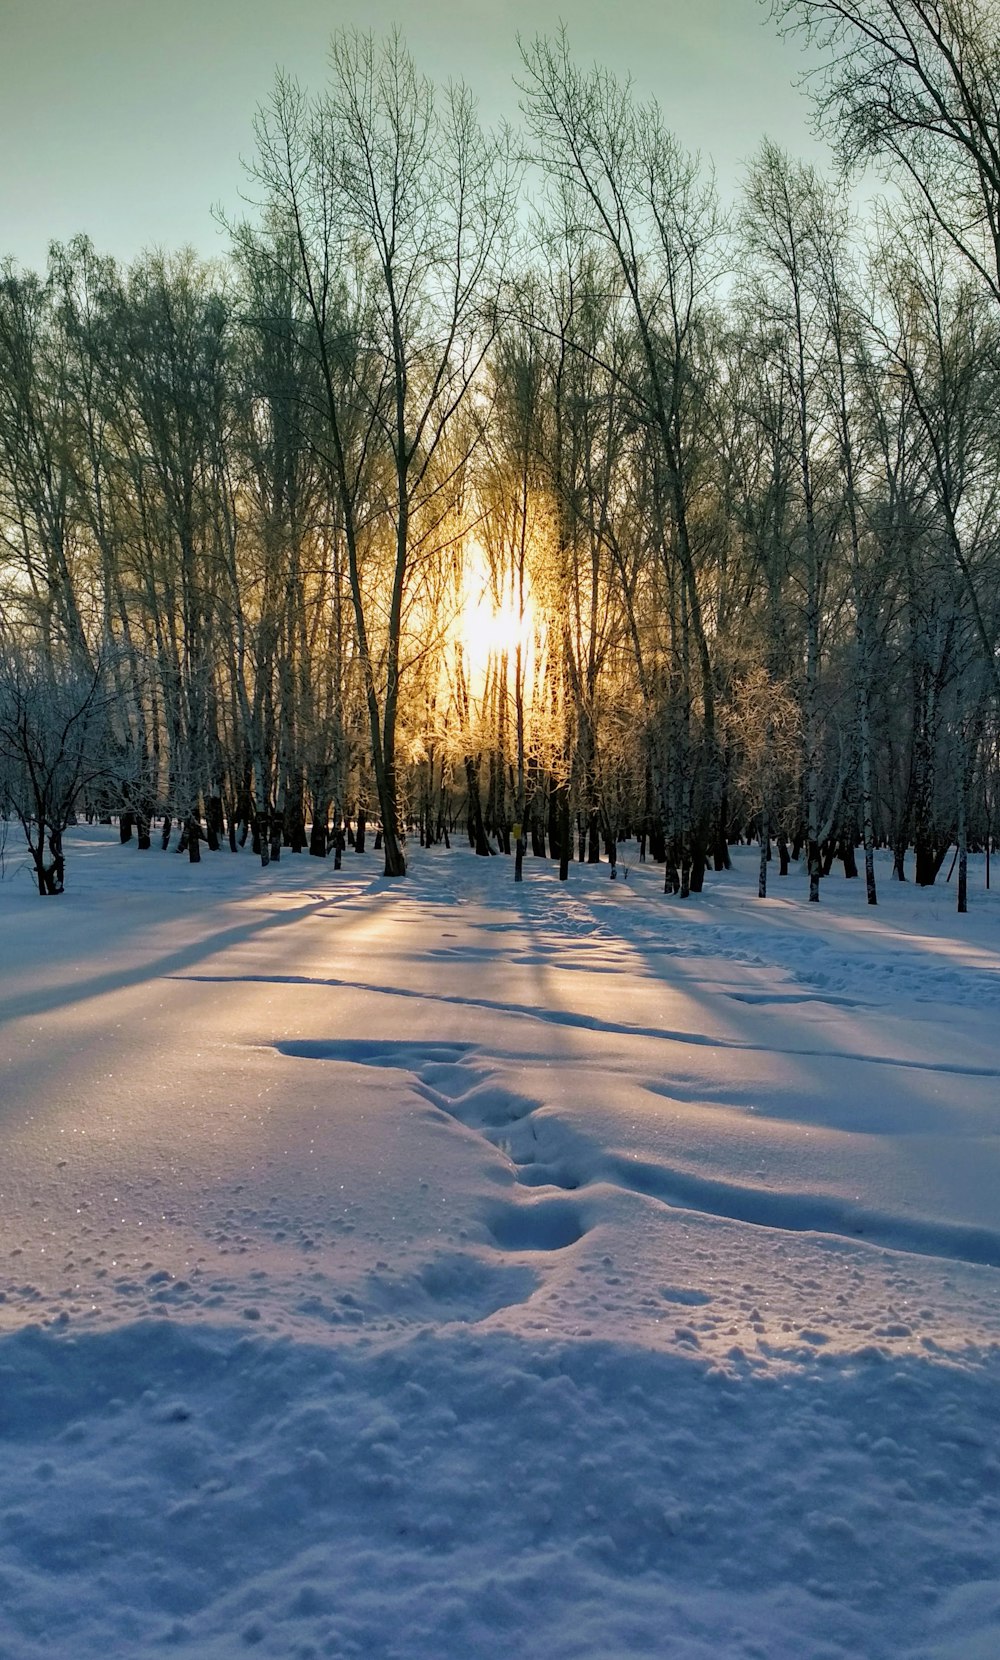 campo coberto de neve com árvores durante o dia